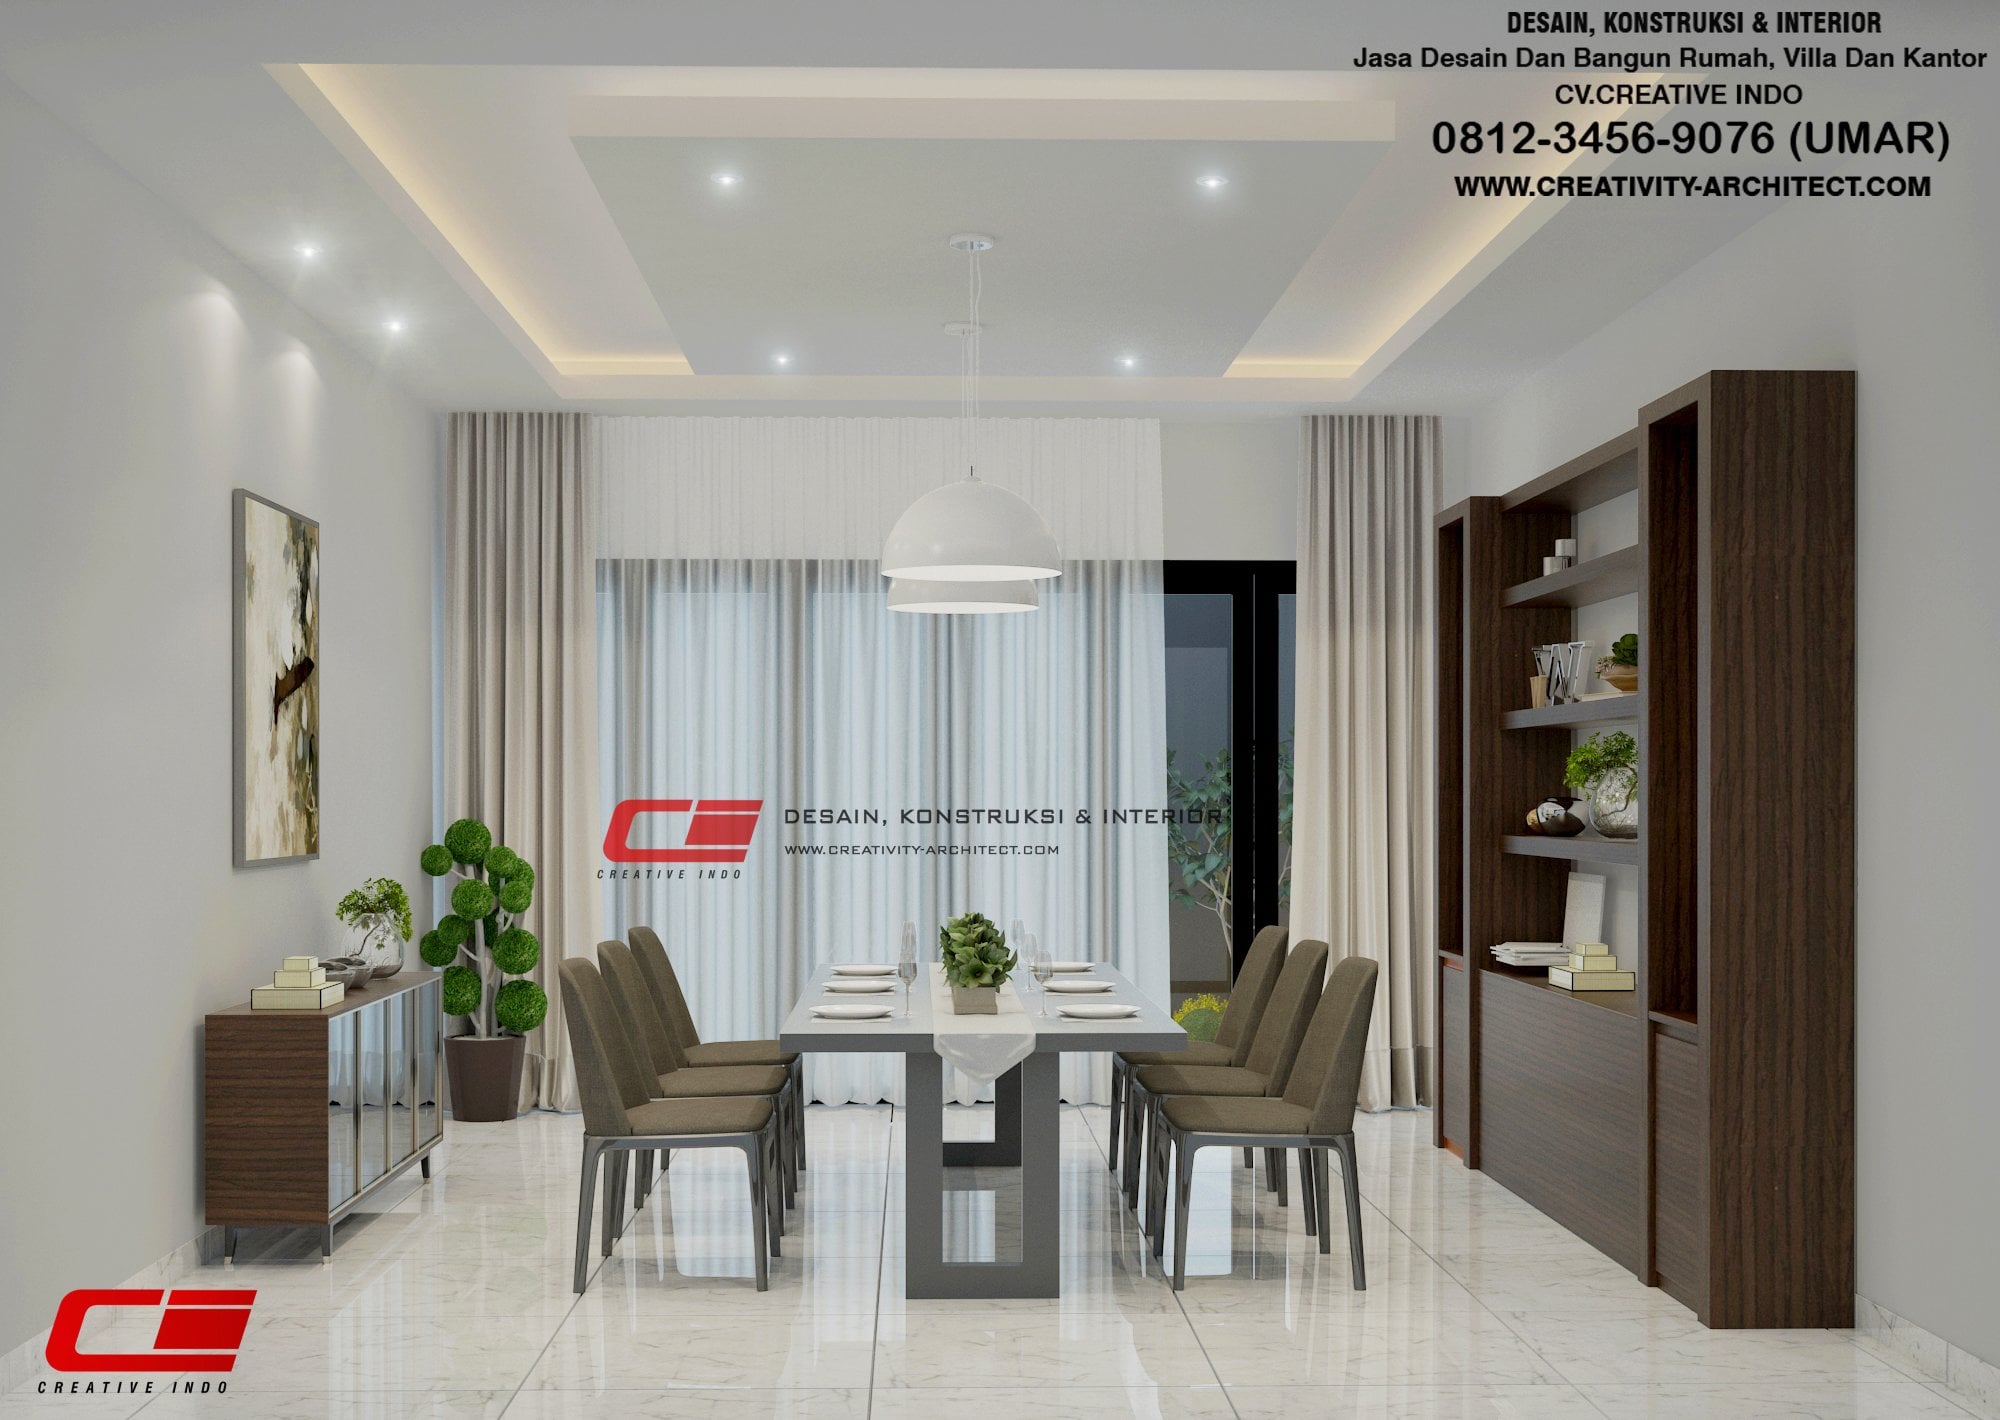 Fantastis Desain Interior Rumah Di Jogja 53 Tentang Ide Renovasi Rumah untuk Desain Interior Rumah Di Jogja